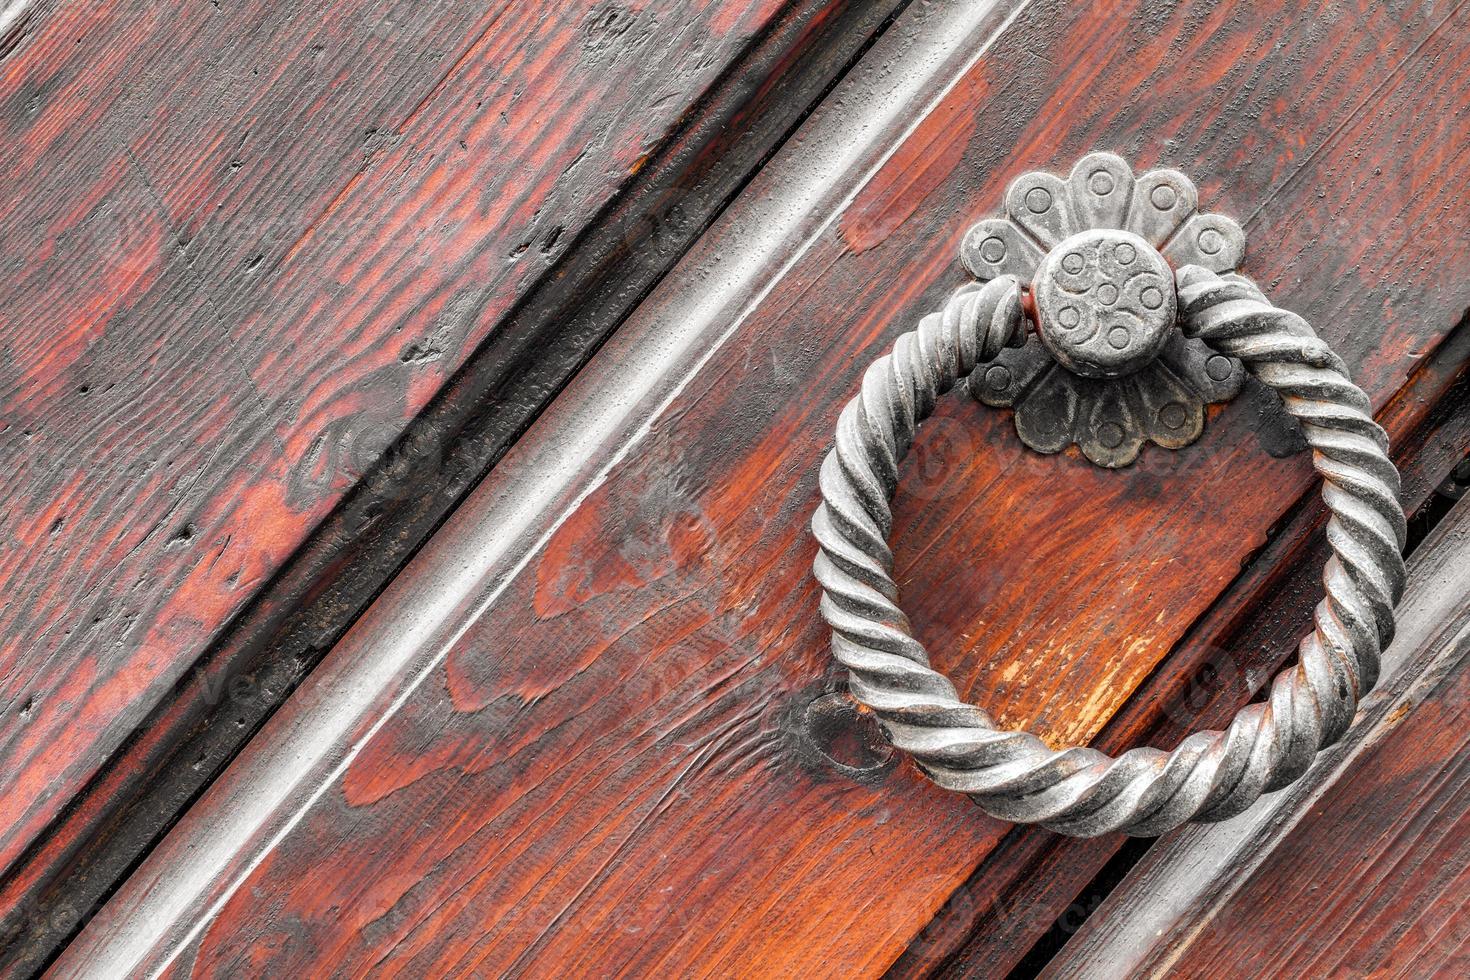 vintage deurknop op antieke deur, achtergrond foto